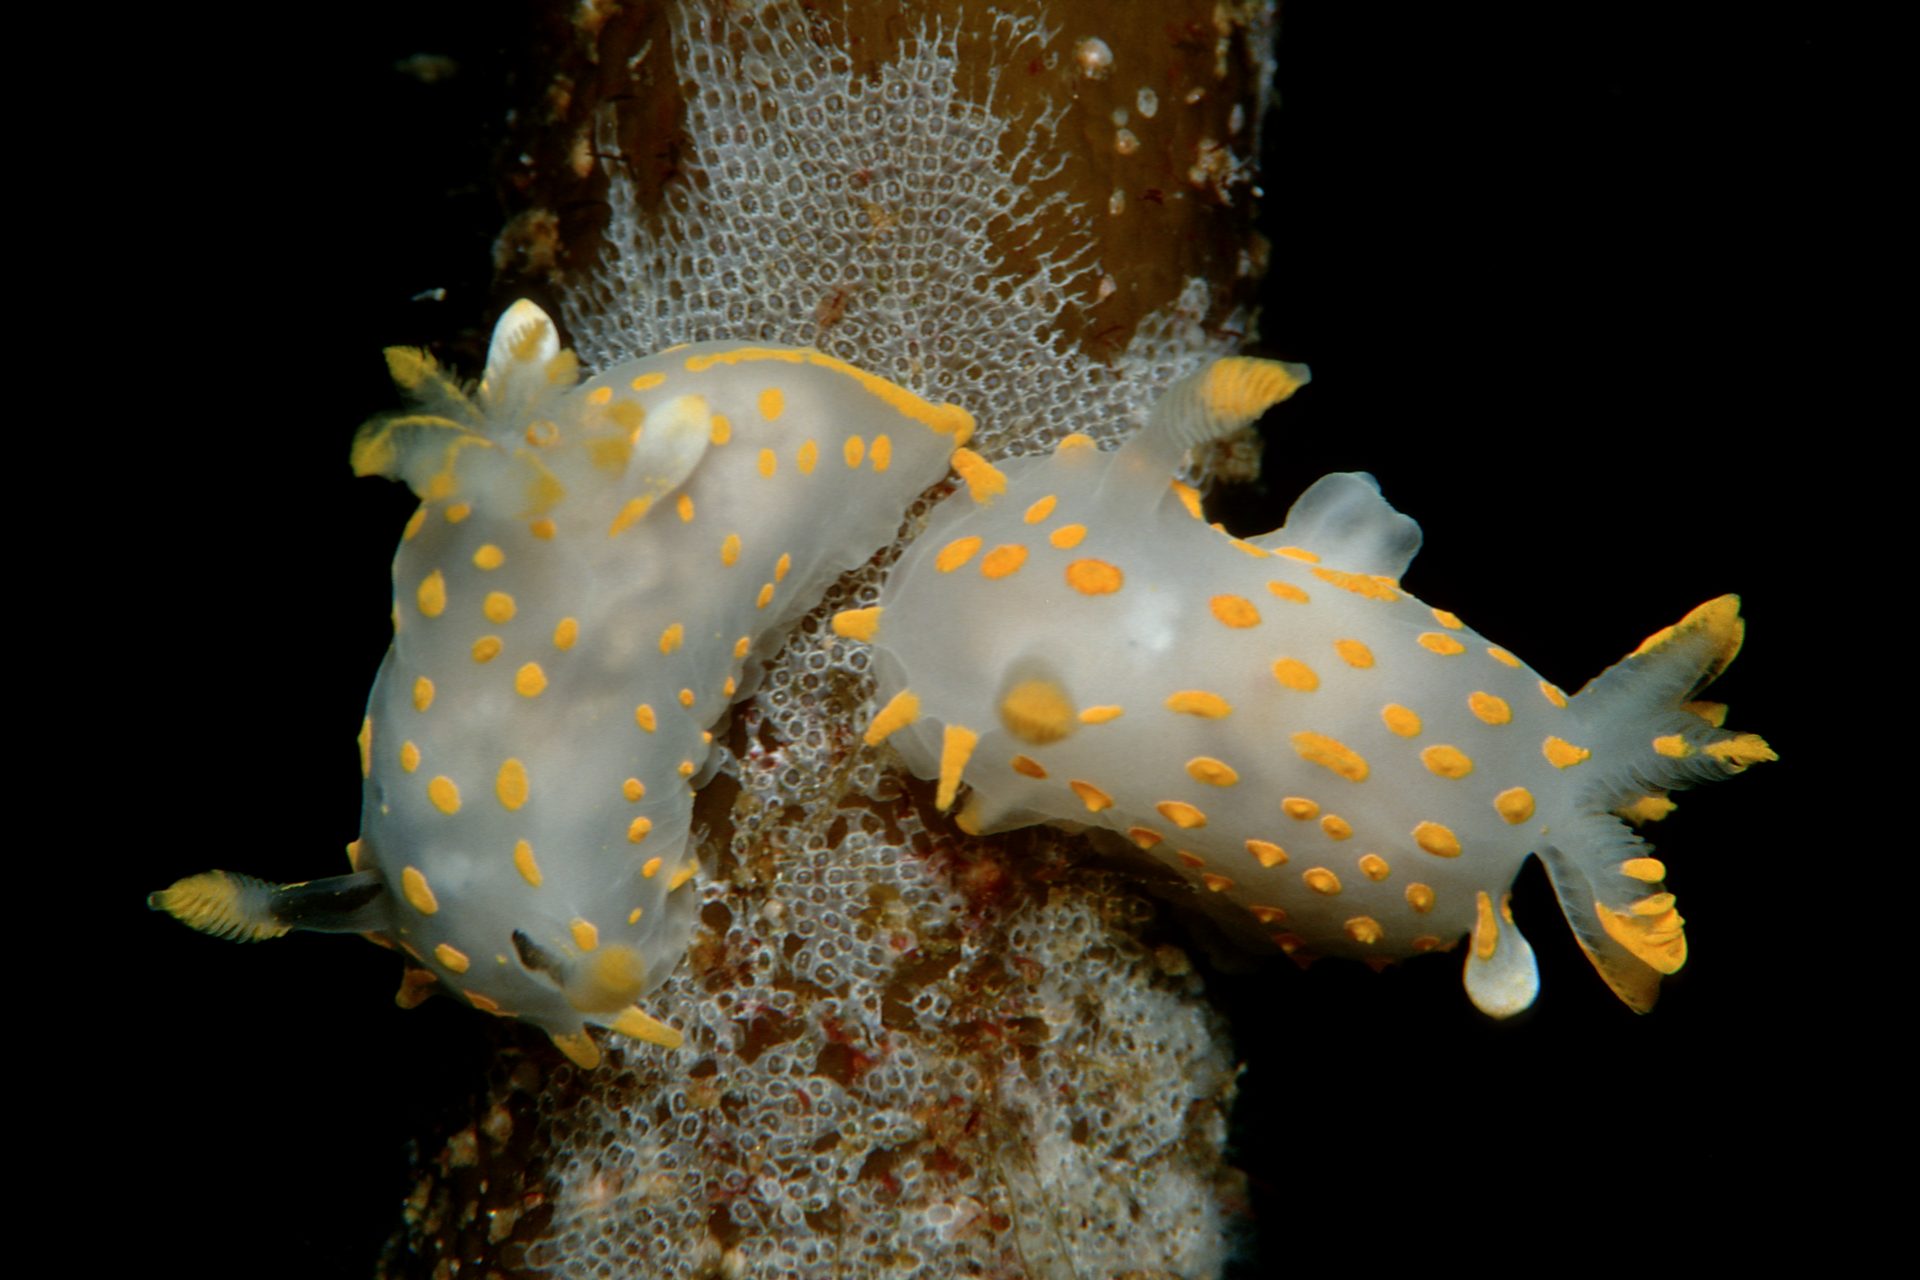 Sea slug fashion show